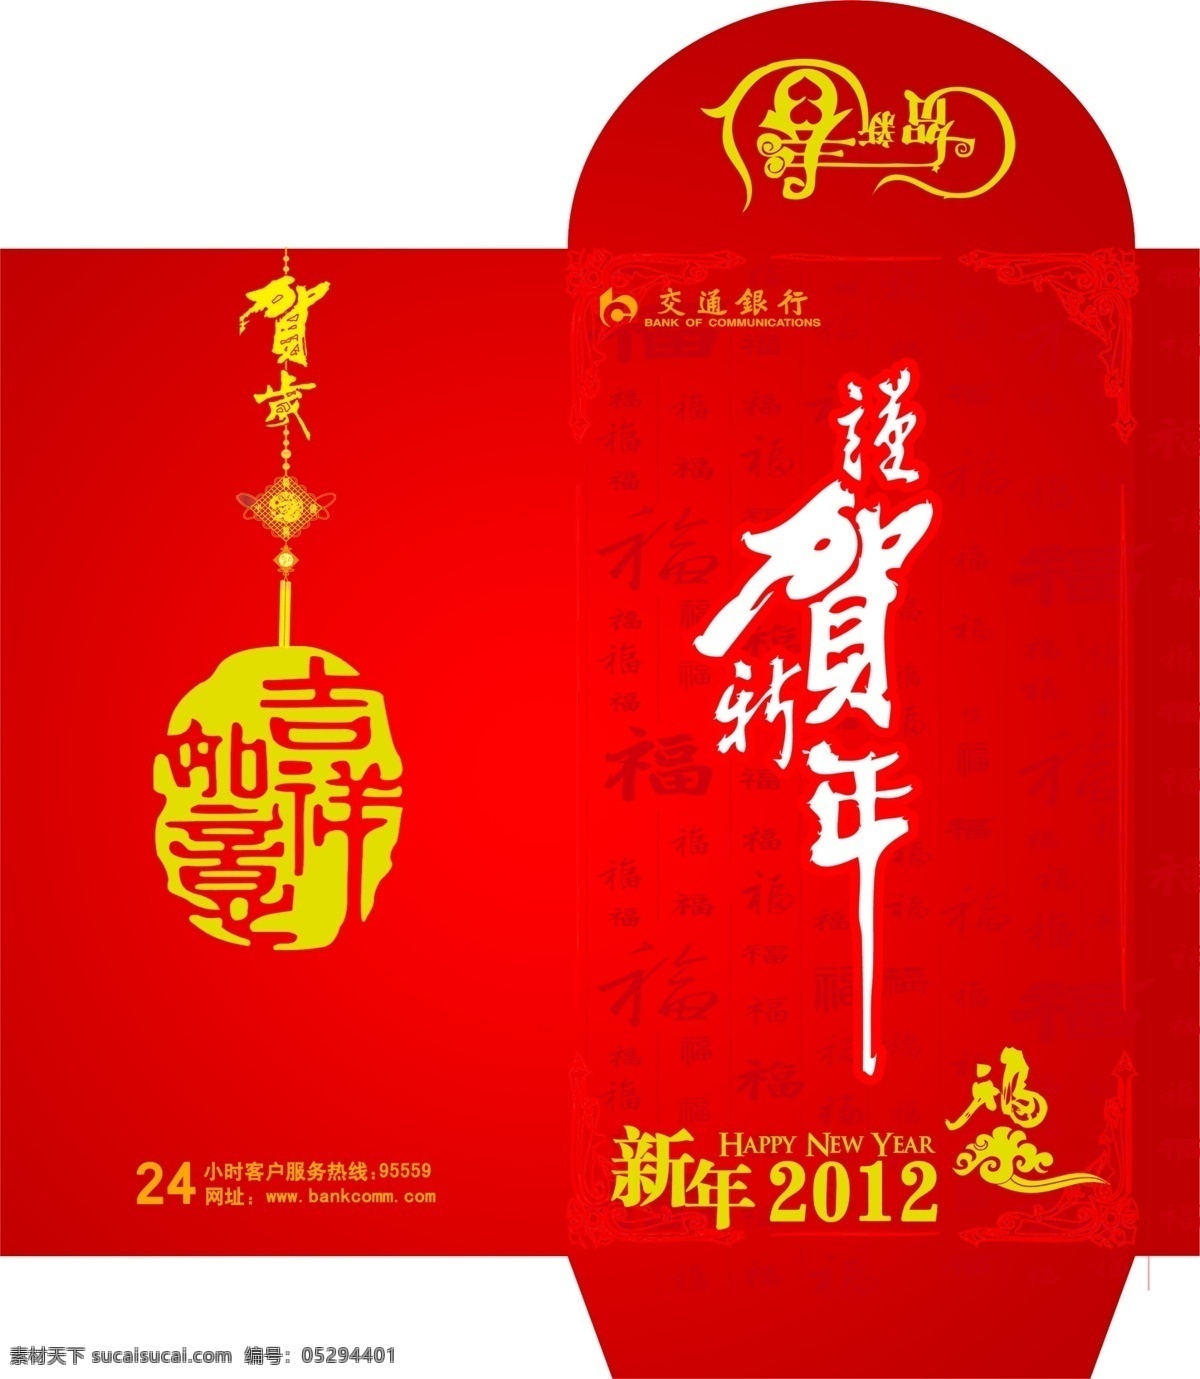 2012 年 红包 封包 龙年红包 春节 节日素材 源文件